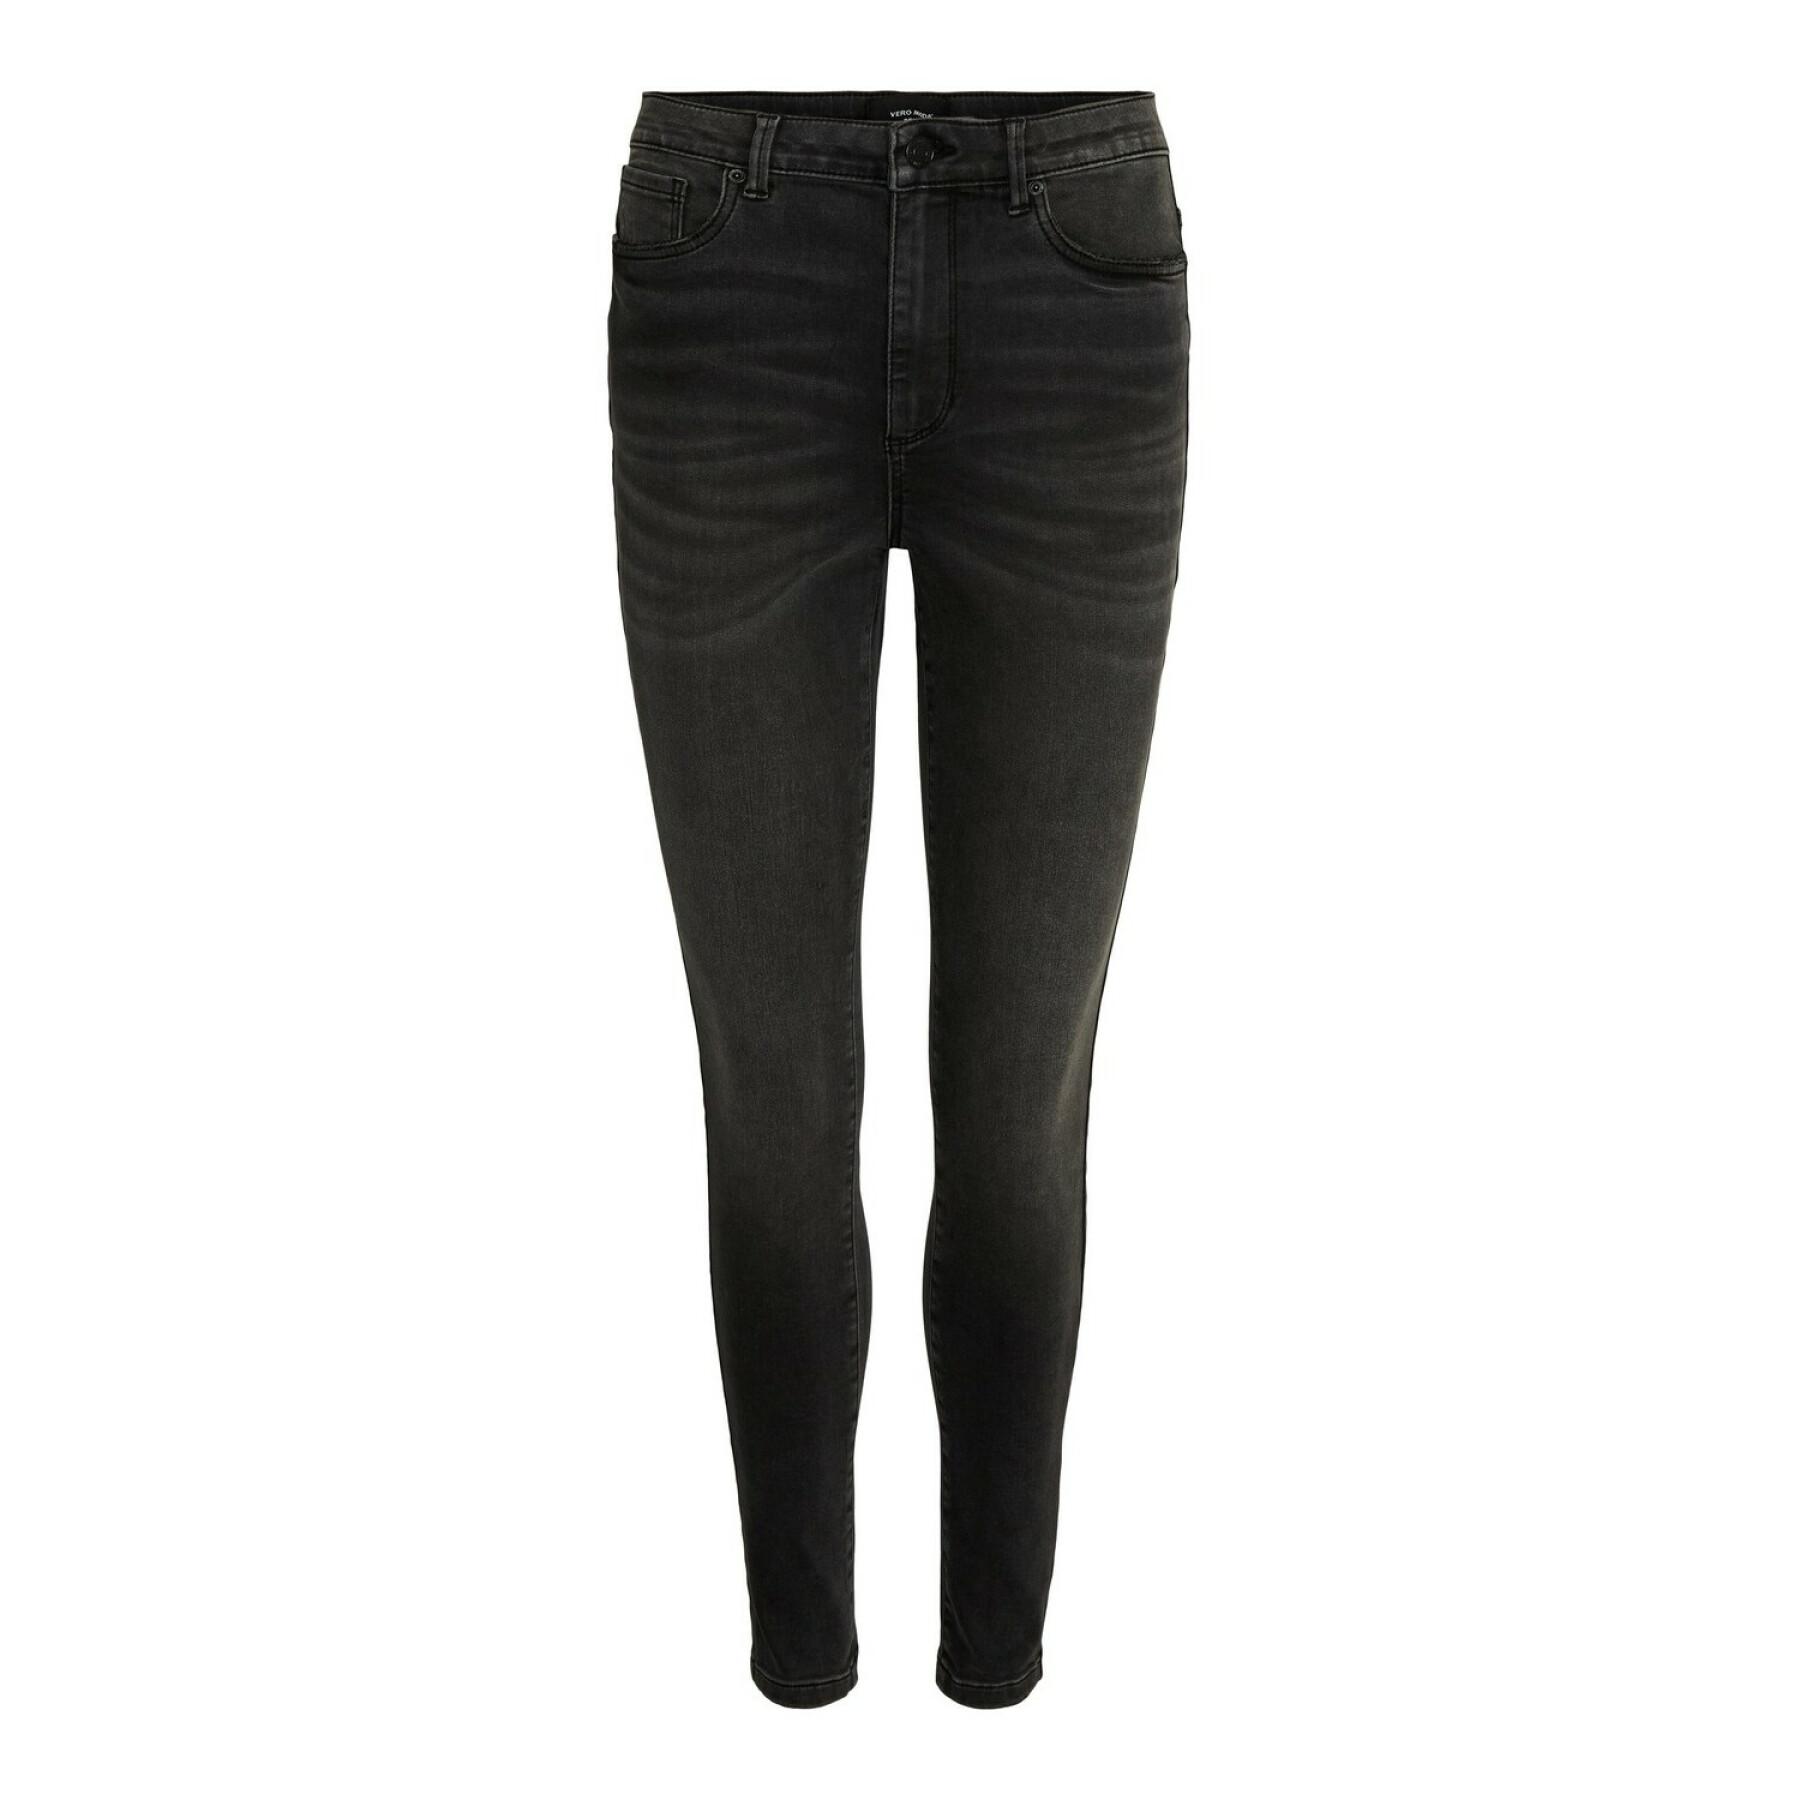 Damskie skinny jeans Vero Moda vmsophia 224